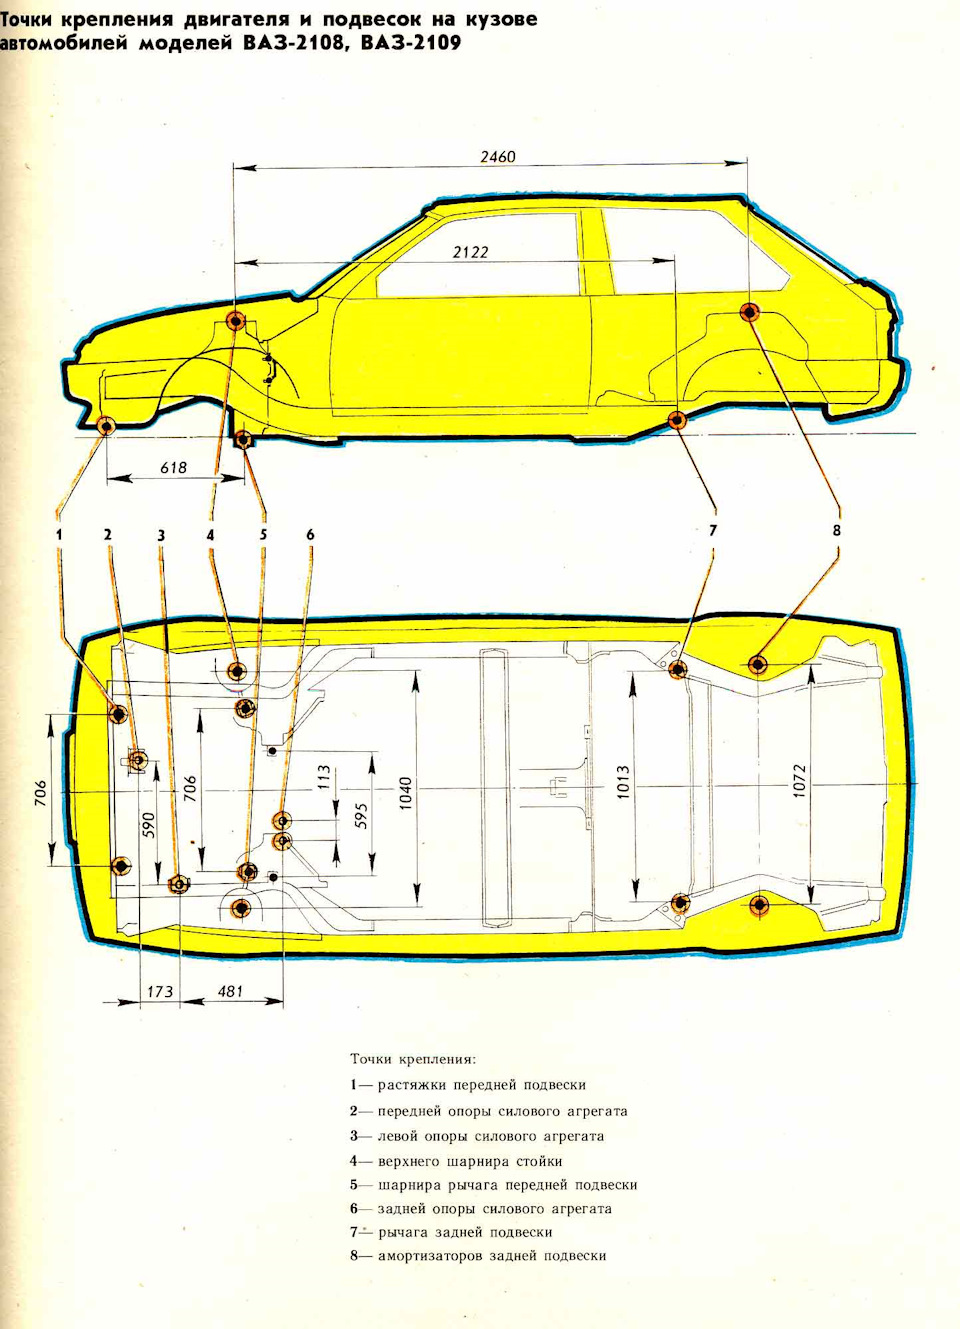 Контрольные точки геометрии кузова Lada 4x4 (чертежи)